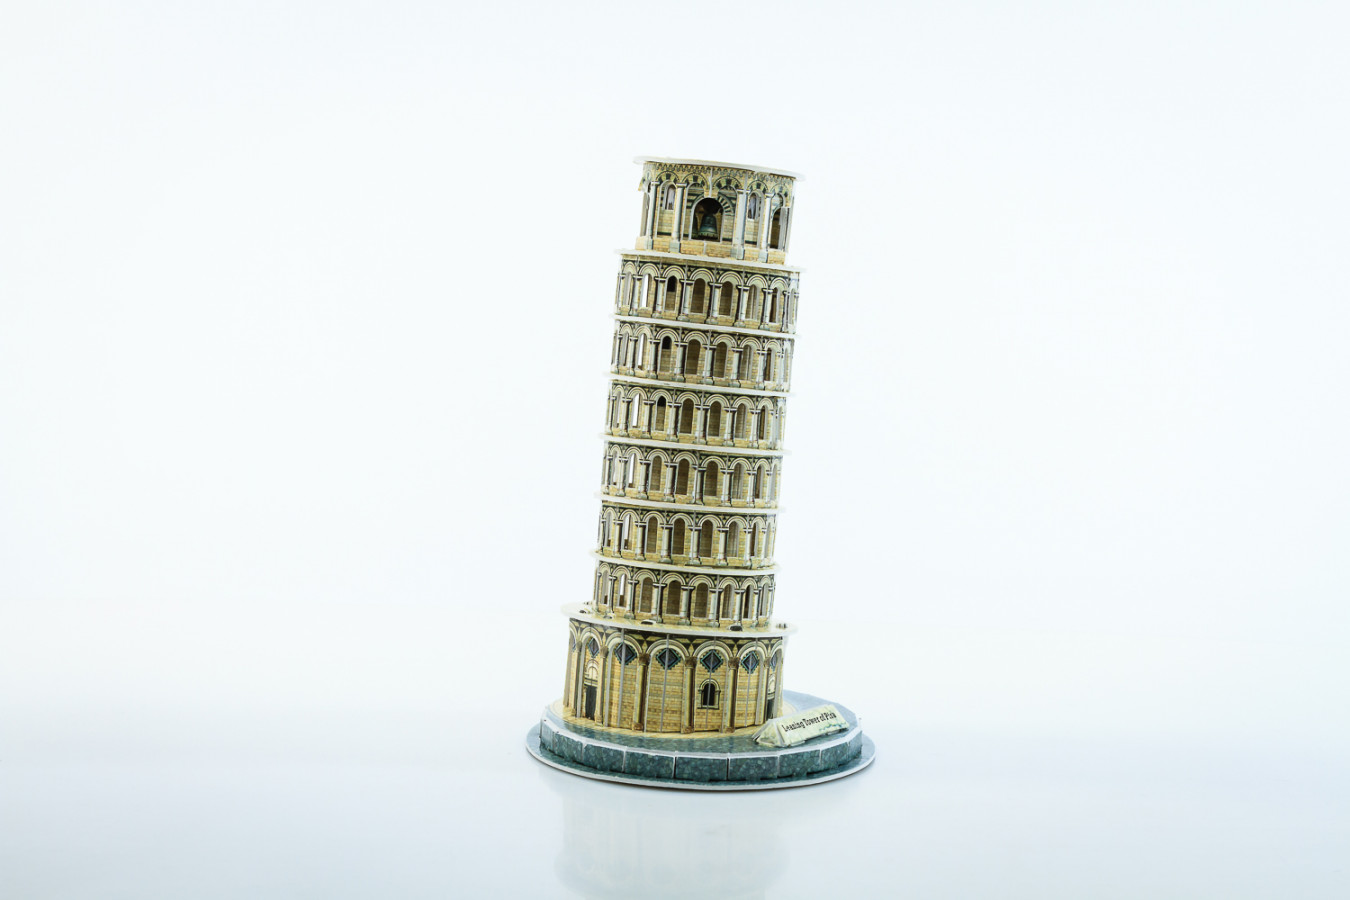 ImagenRompecabezas 3D : Torre Empinada de pisa